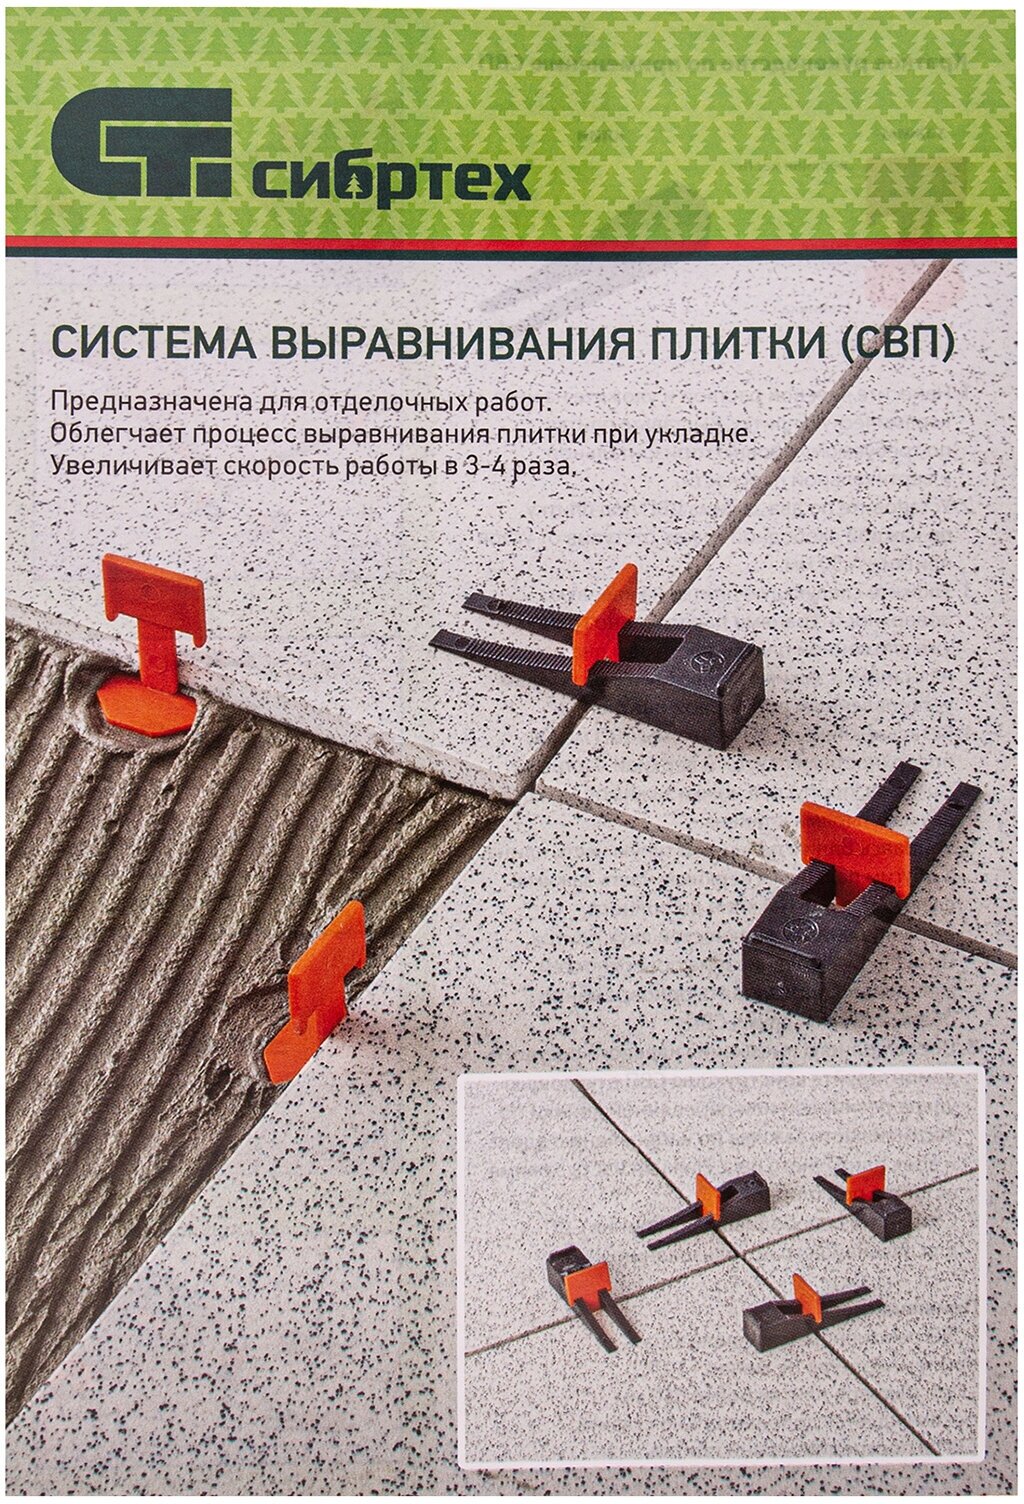 Система выравнивания плитки (СВП) комплект: зажимы клинья (50/50 ) упаковка ведро Сибртех